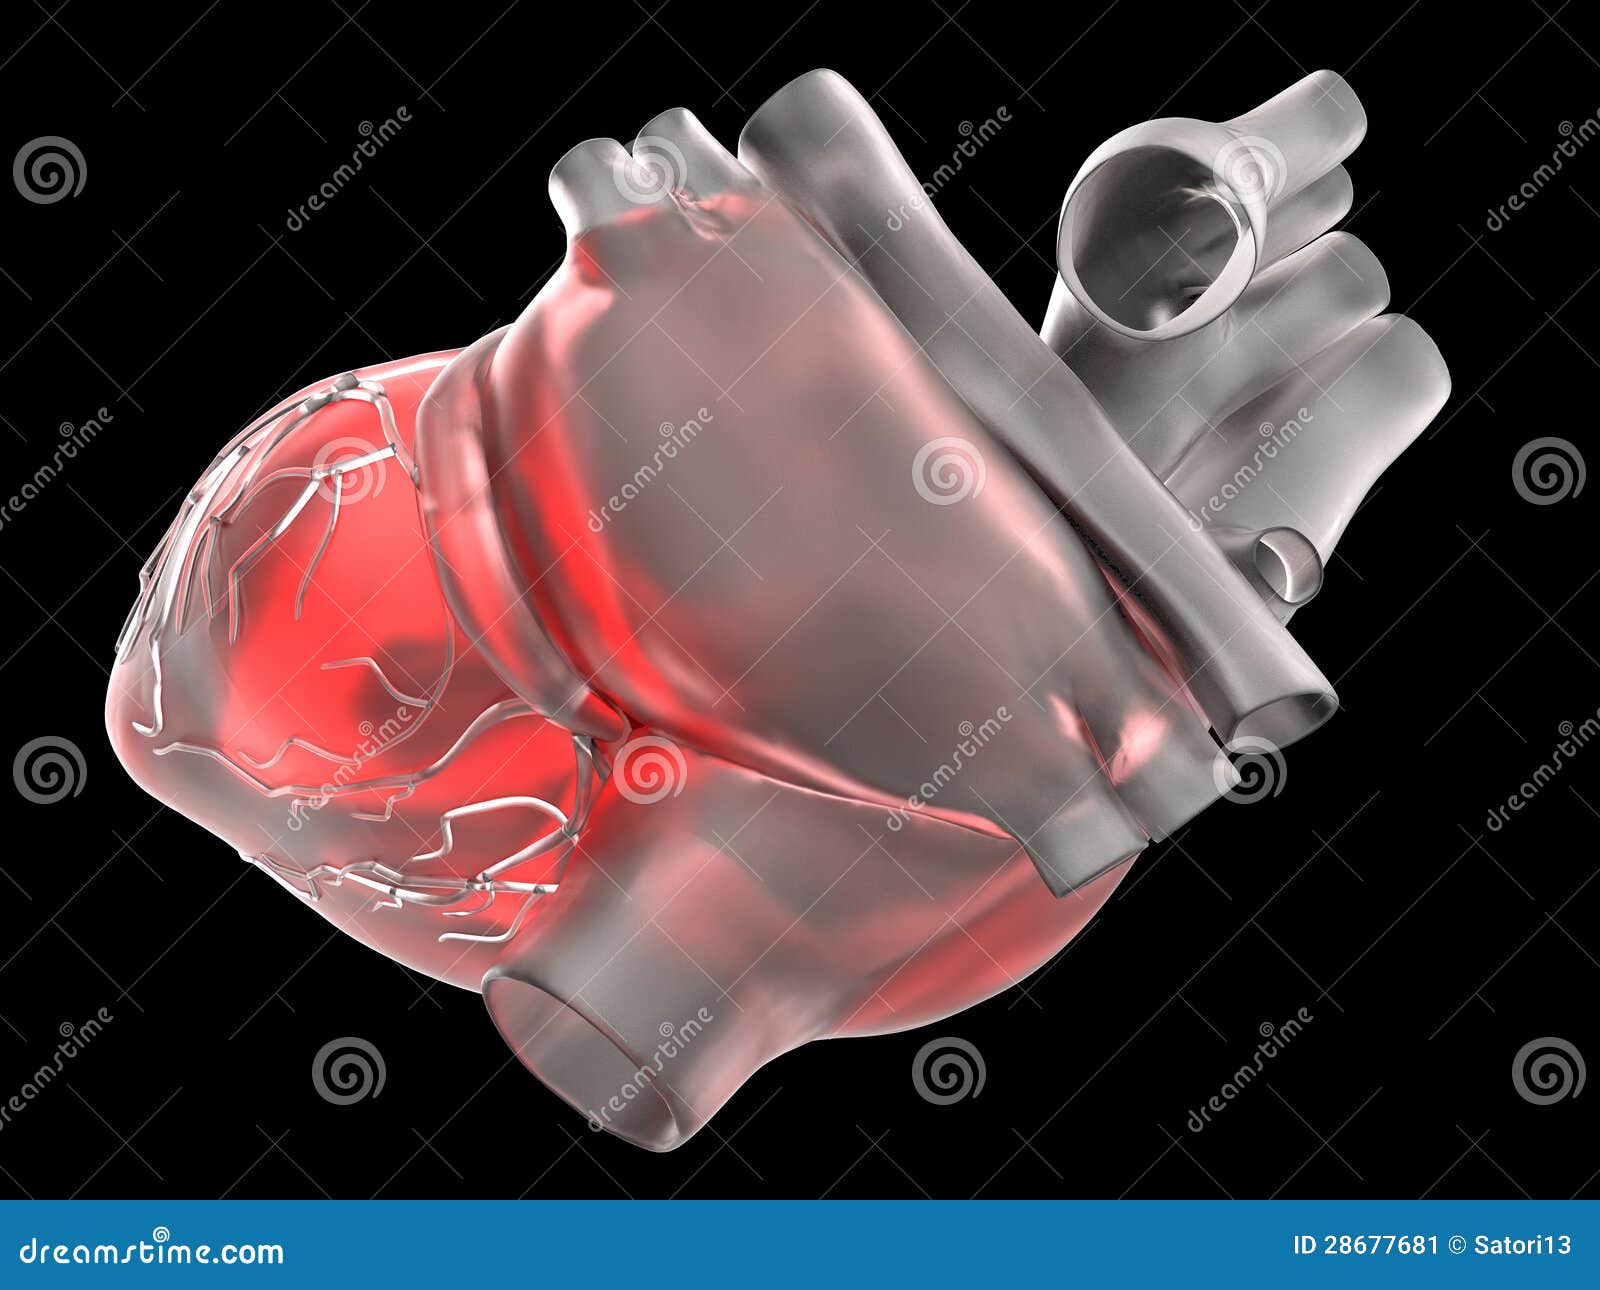 Artificial Human Heart Stock Illustration Illustration Of Model 28677681